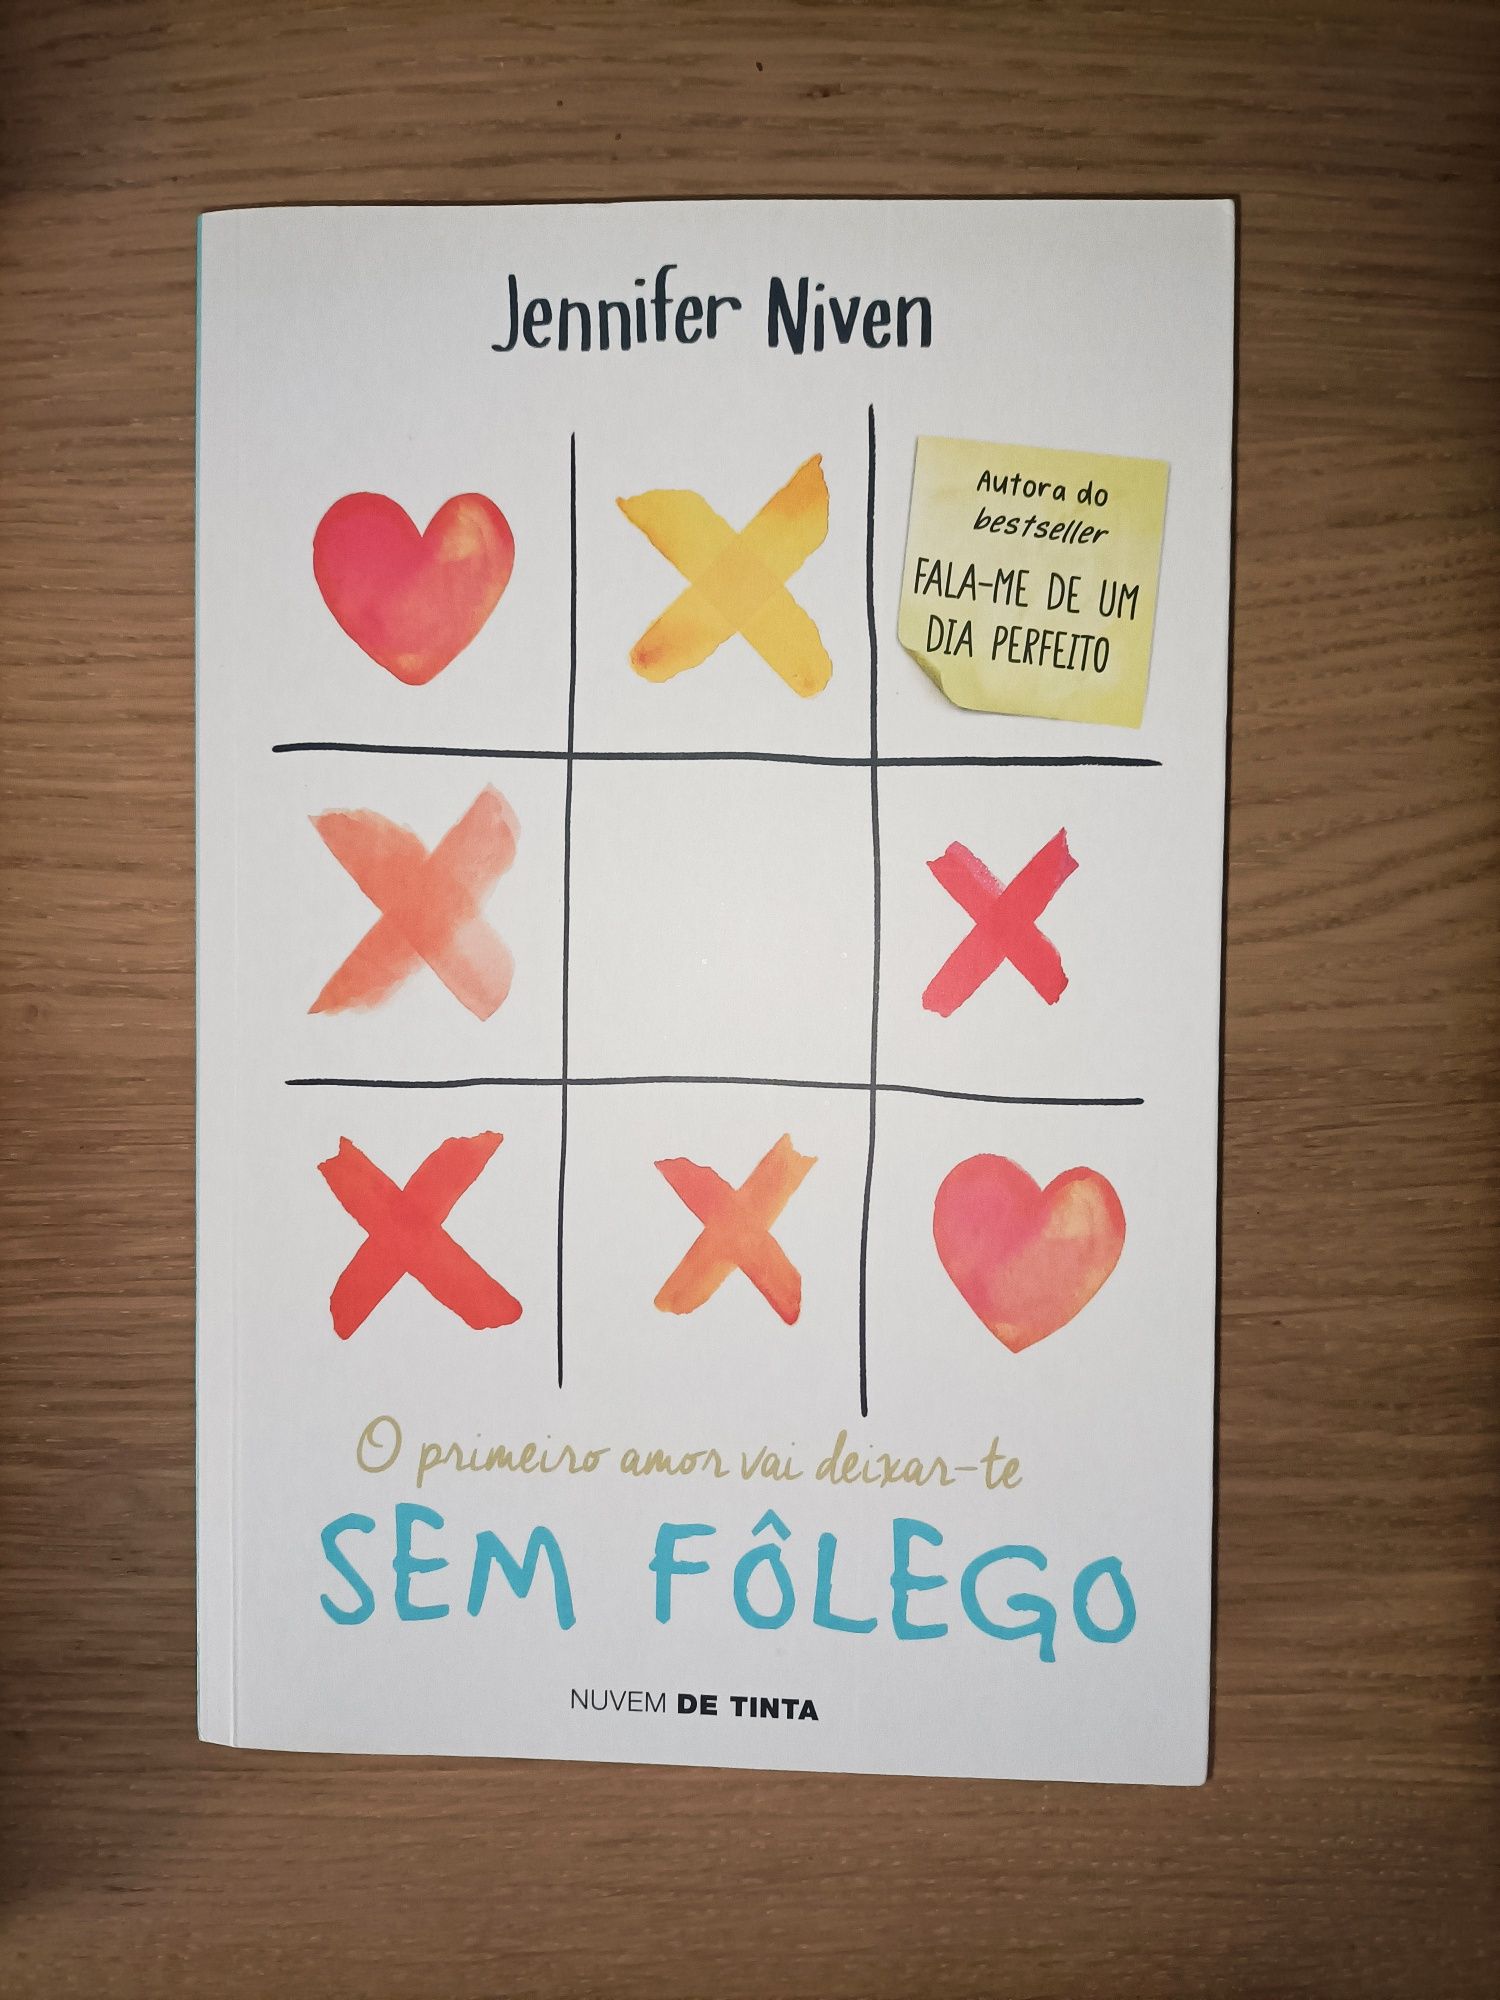 Livro "Sem Fôlego" Jennifer Niven. Leitura Juvenil